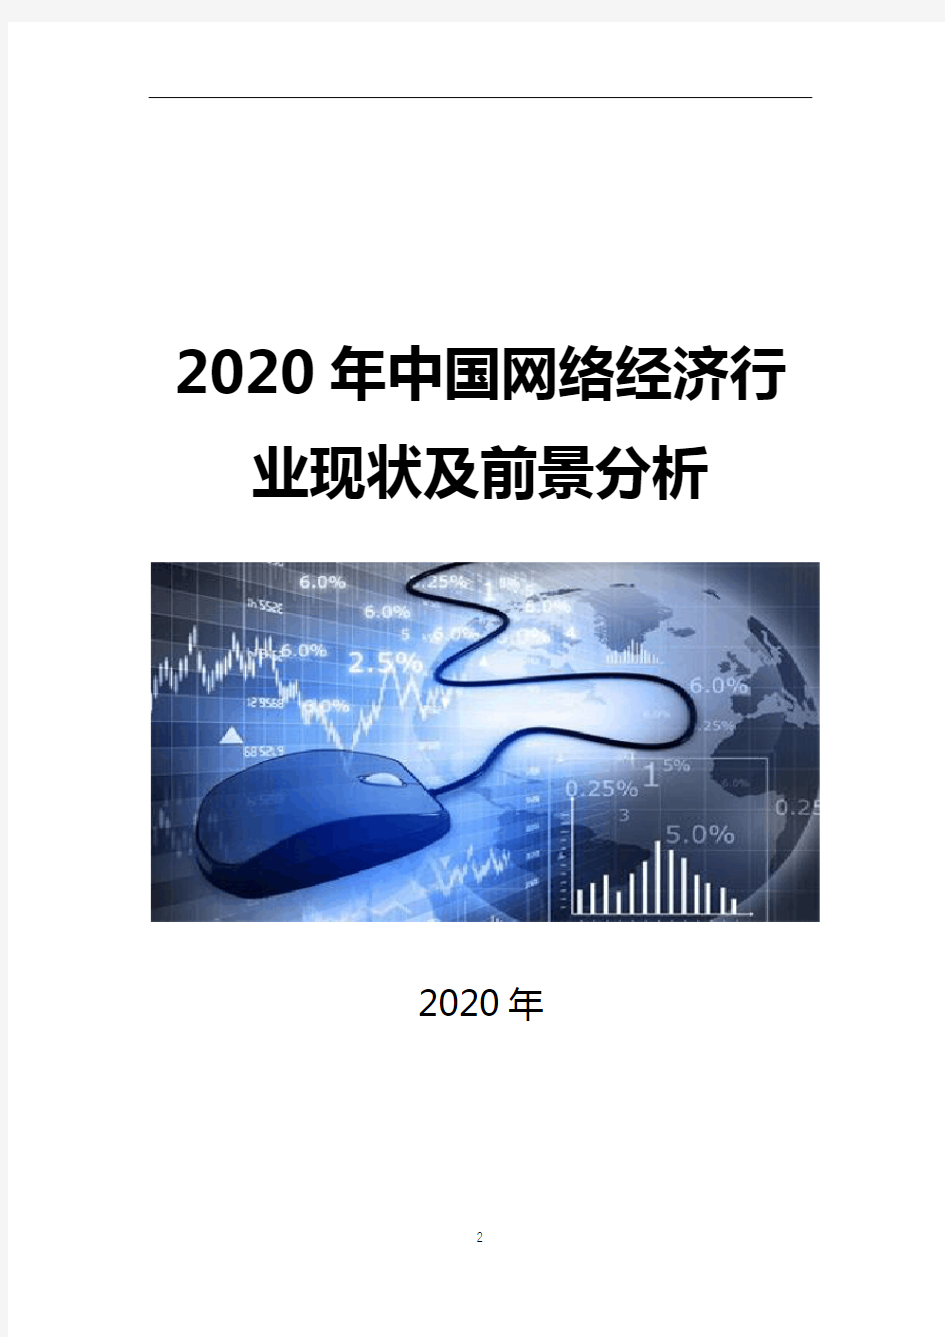 2020年中国网络经济现状及前景分析